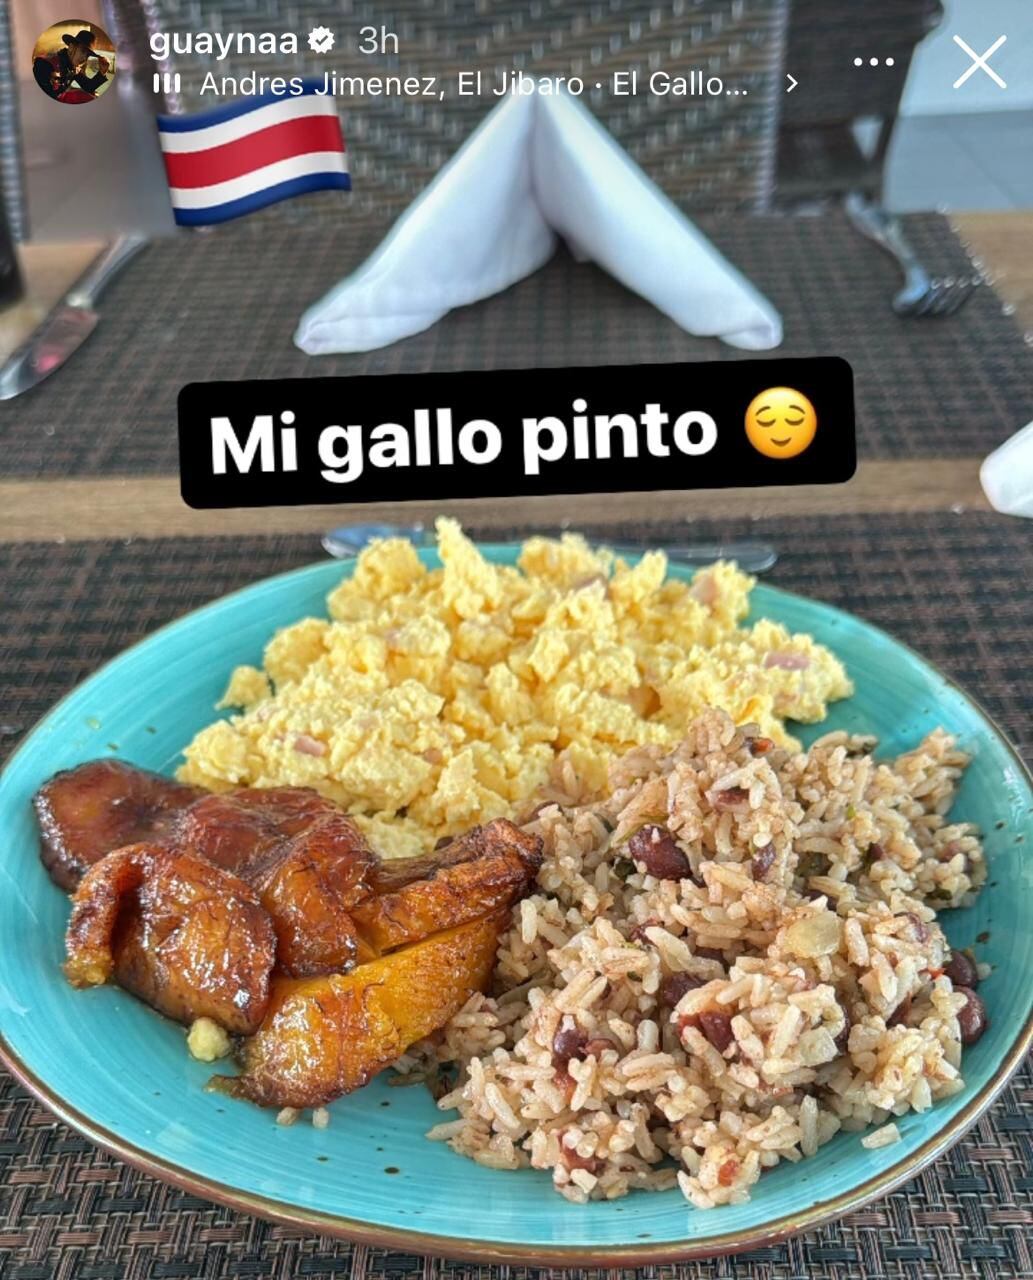 Guaynaa publicó en sus redes sociales que este lunes 20 de mayo desayunó un buen gallo pinto. 